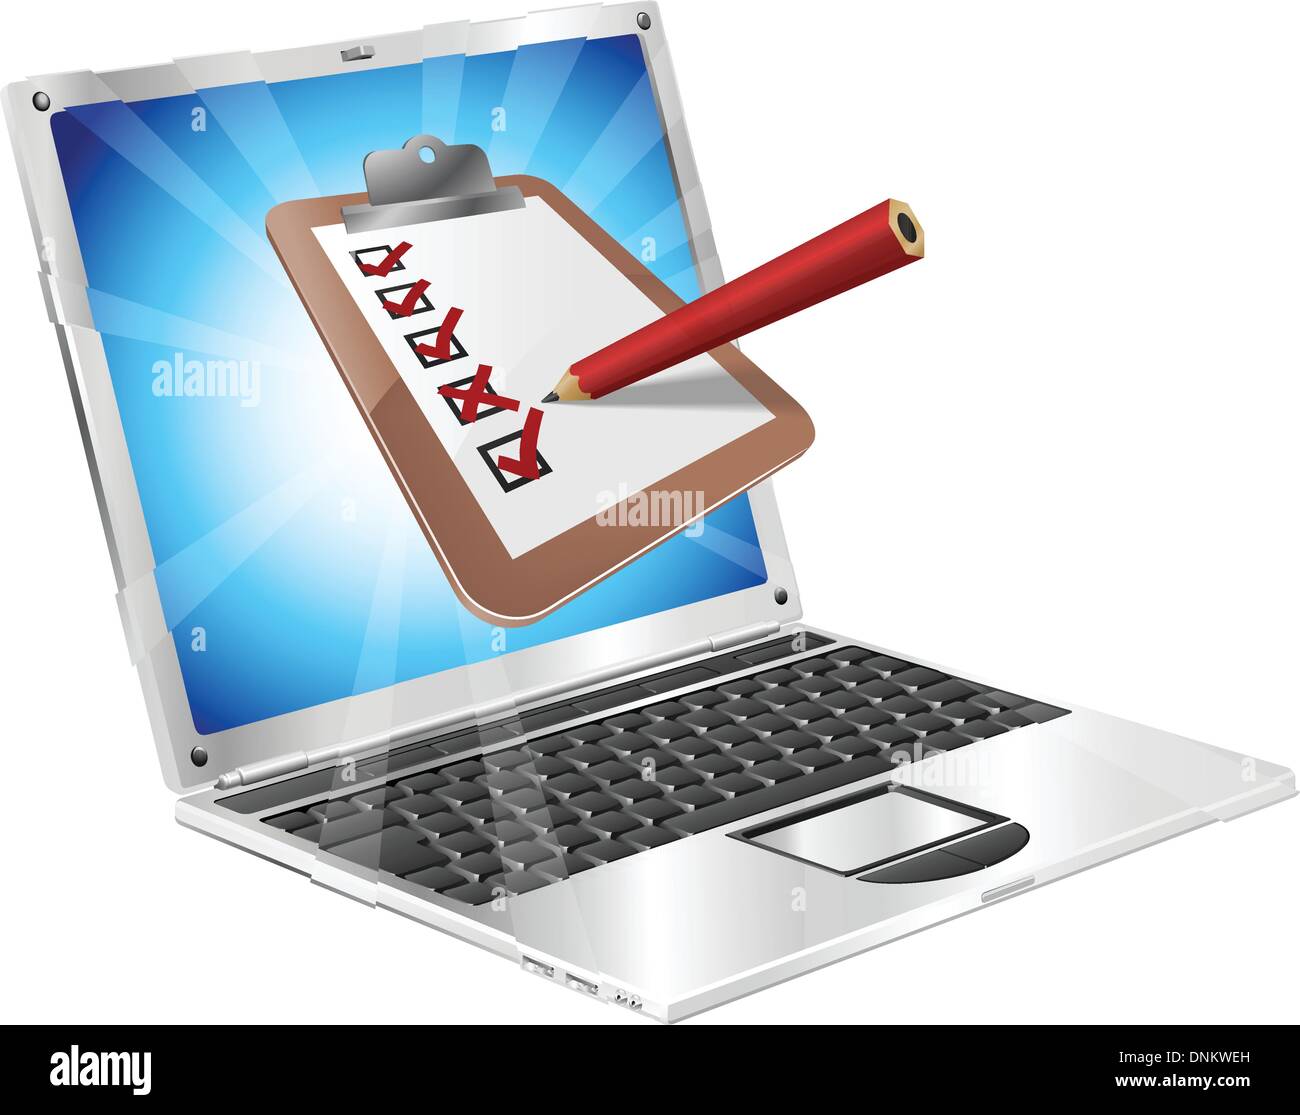 Eine Illustration der Zwischenablage mit Bleistift markieren auf Laptop-Bildschirm aus. Vielleicht eine Online-Umfrage, Umfrage, o Stock Vektor